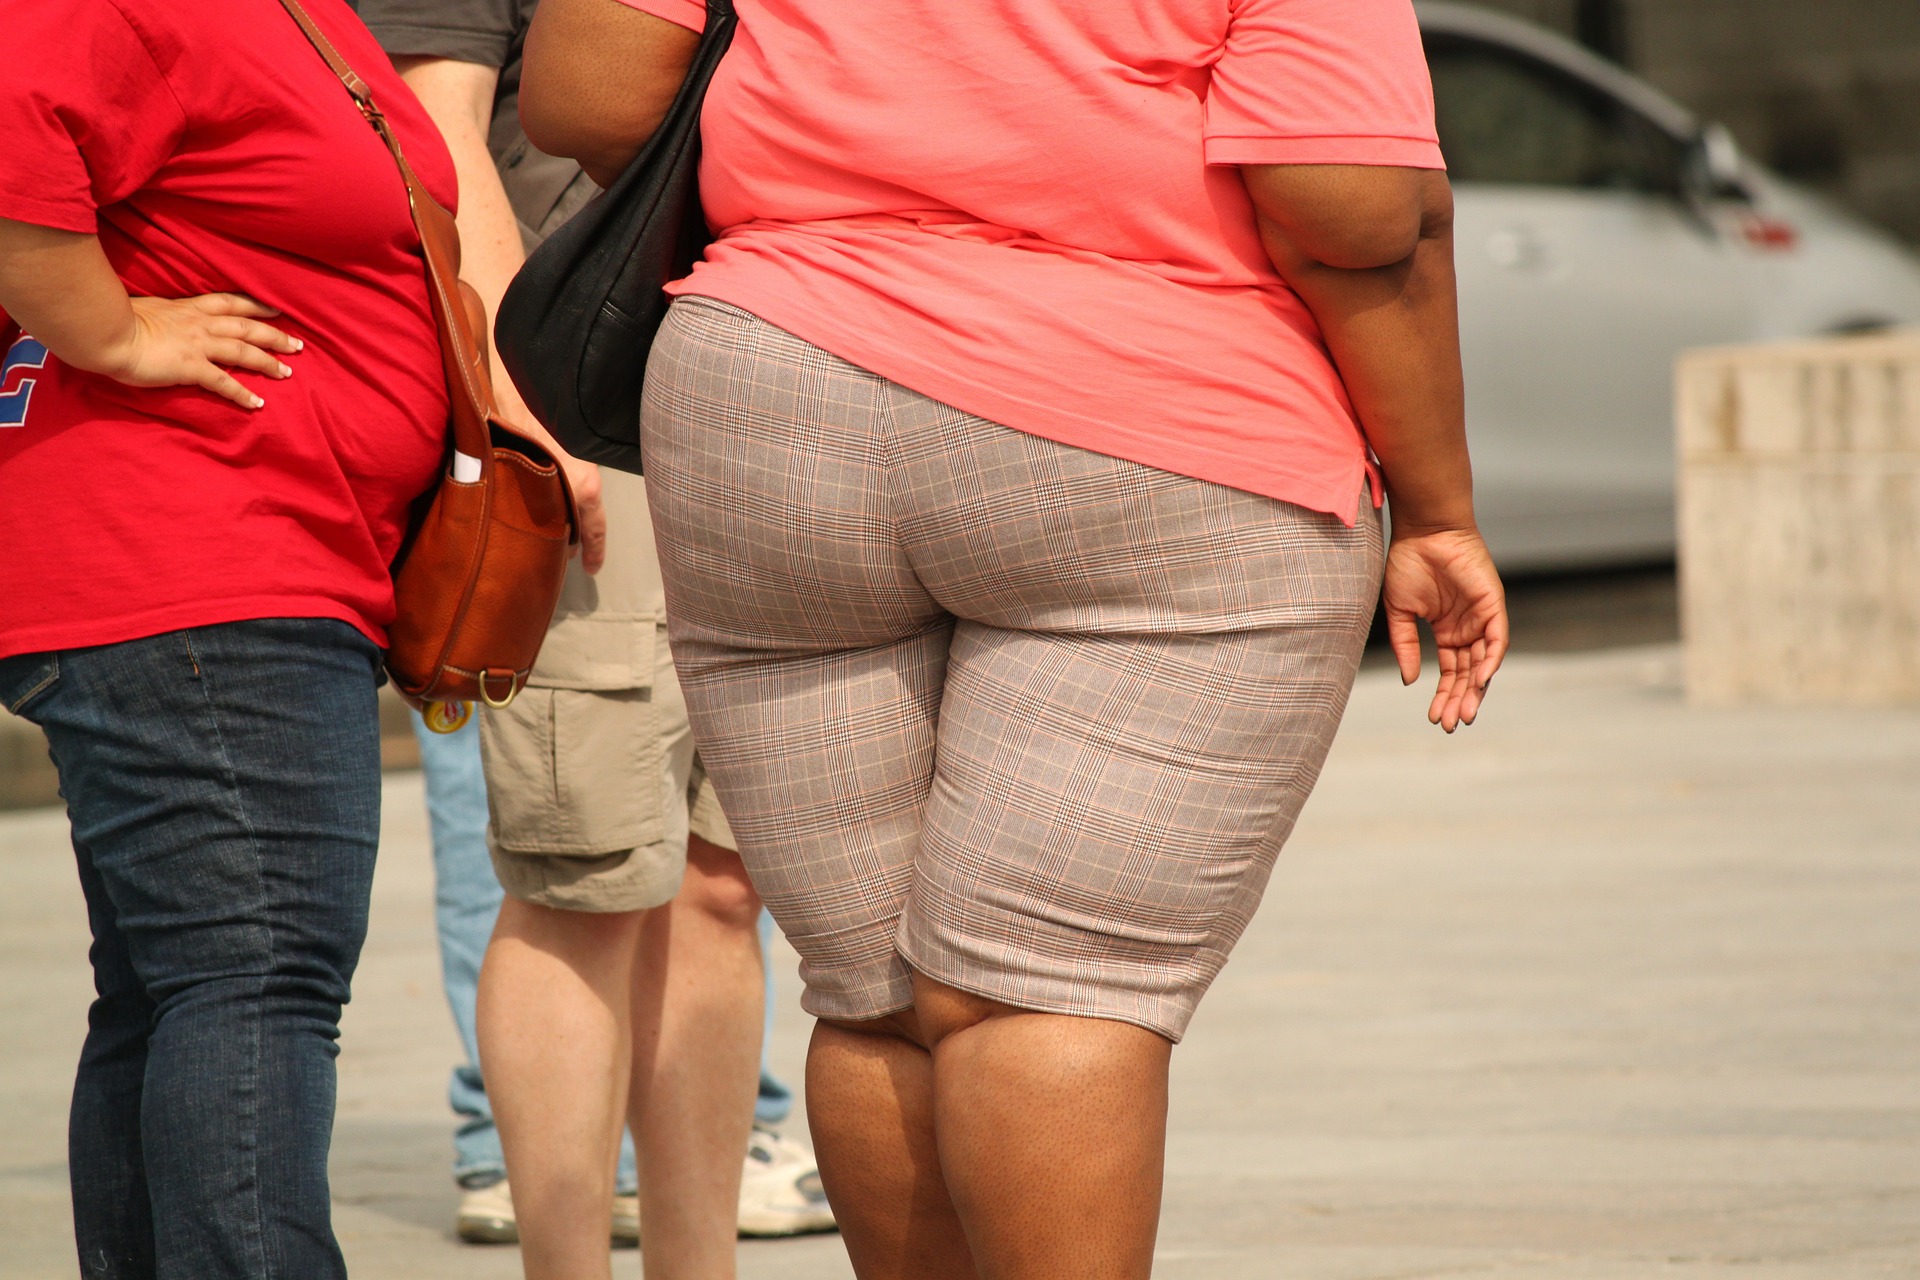 Ожирение опасно для здоровье